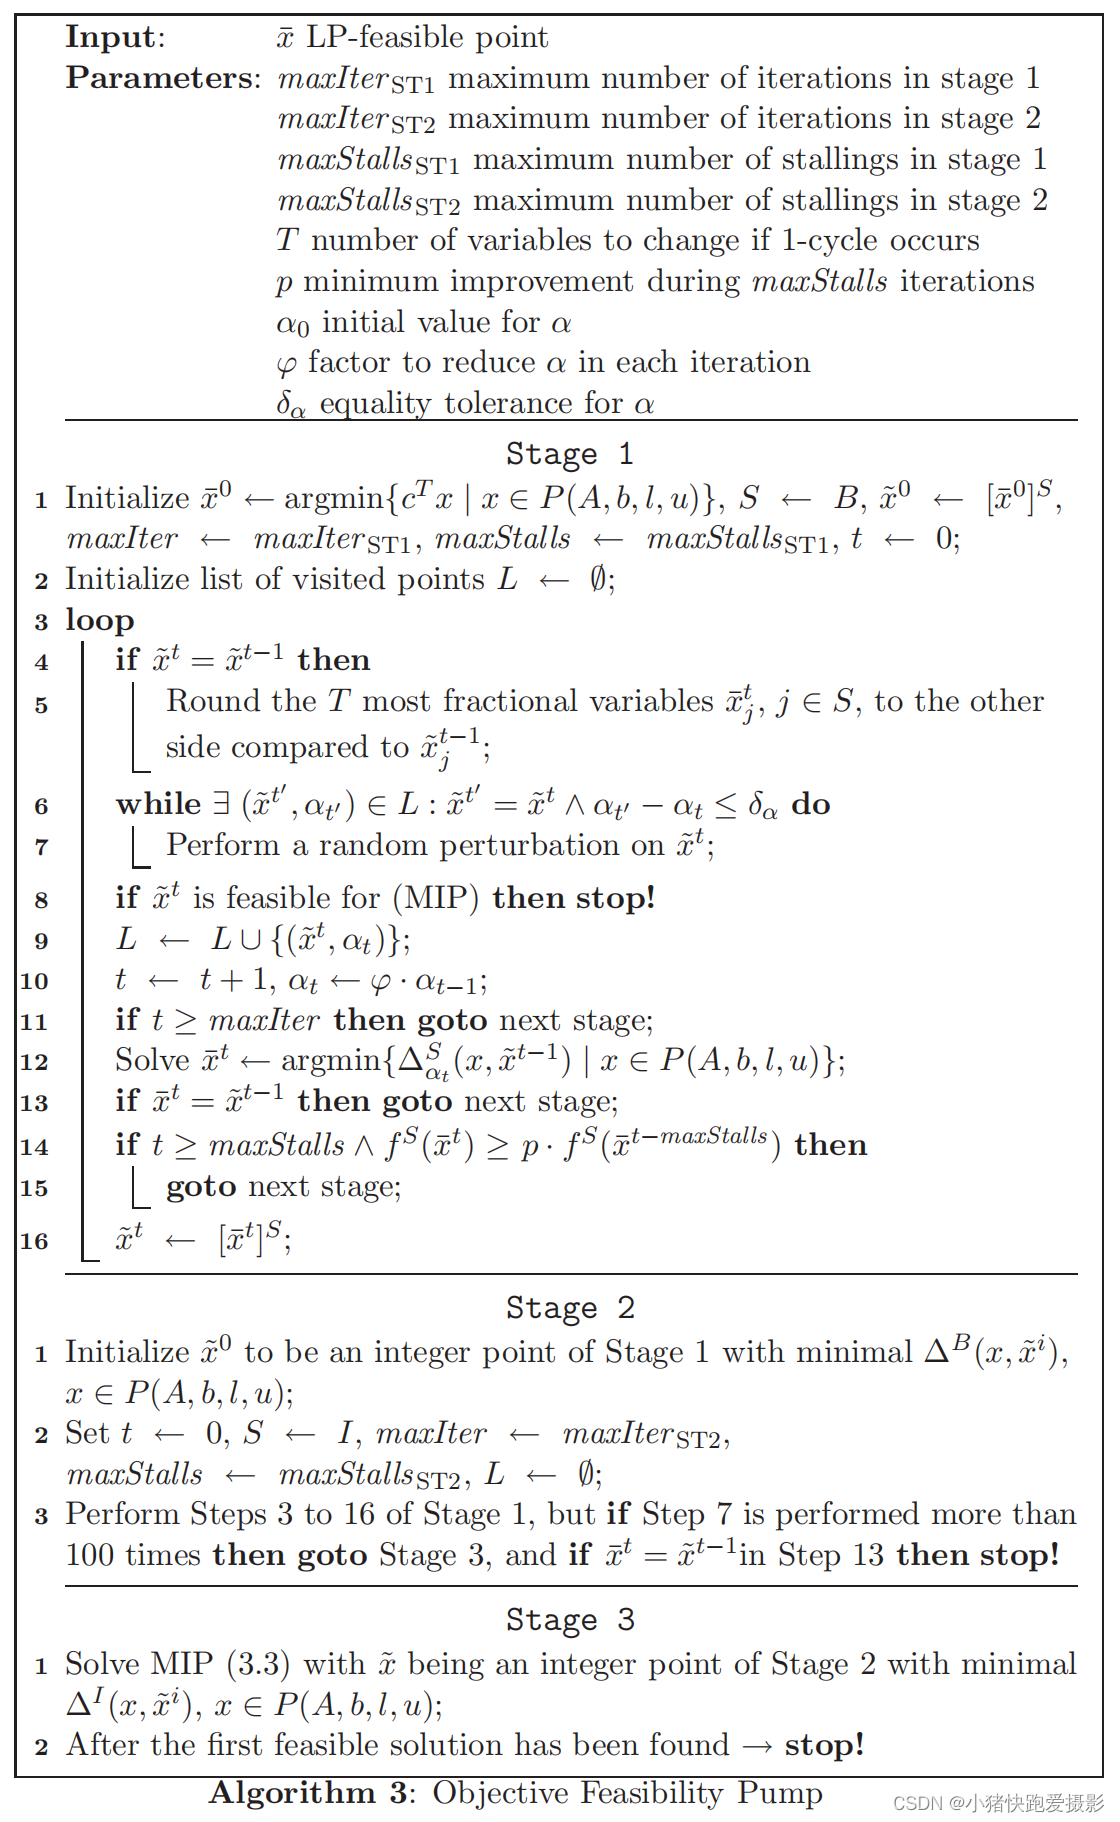 【0基础运筹学】【SCIP论文】【3.1.2 Feasibility Pump（可行性泵）】Primal Heuristics for Mixed Integer Programs